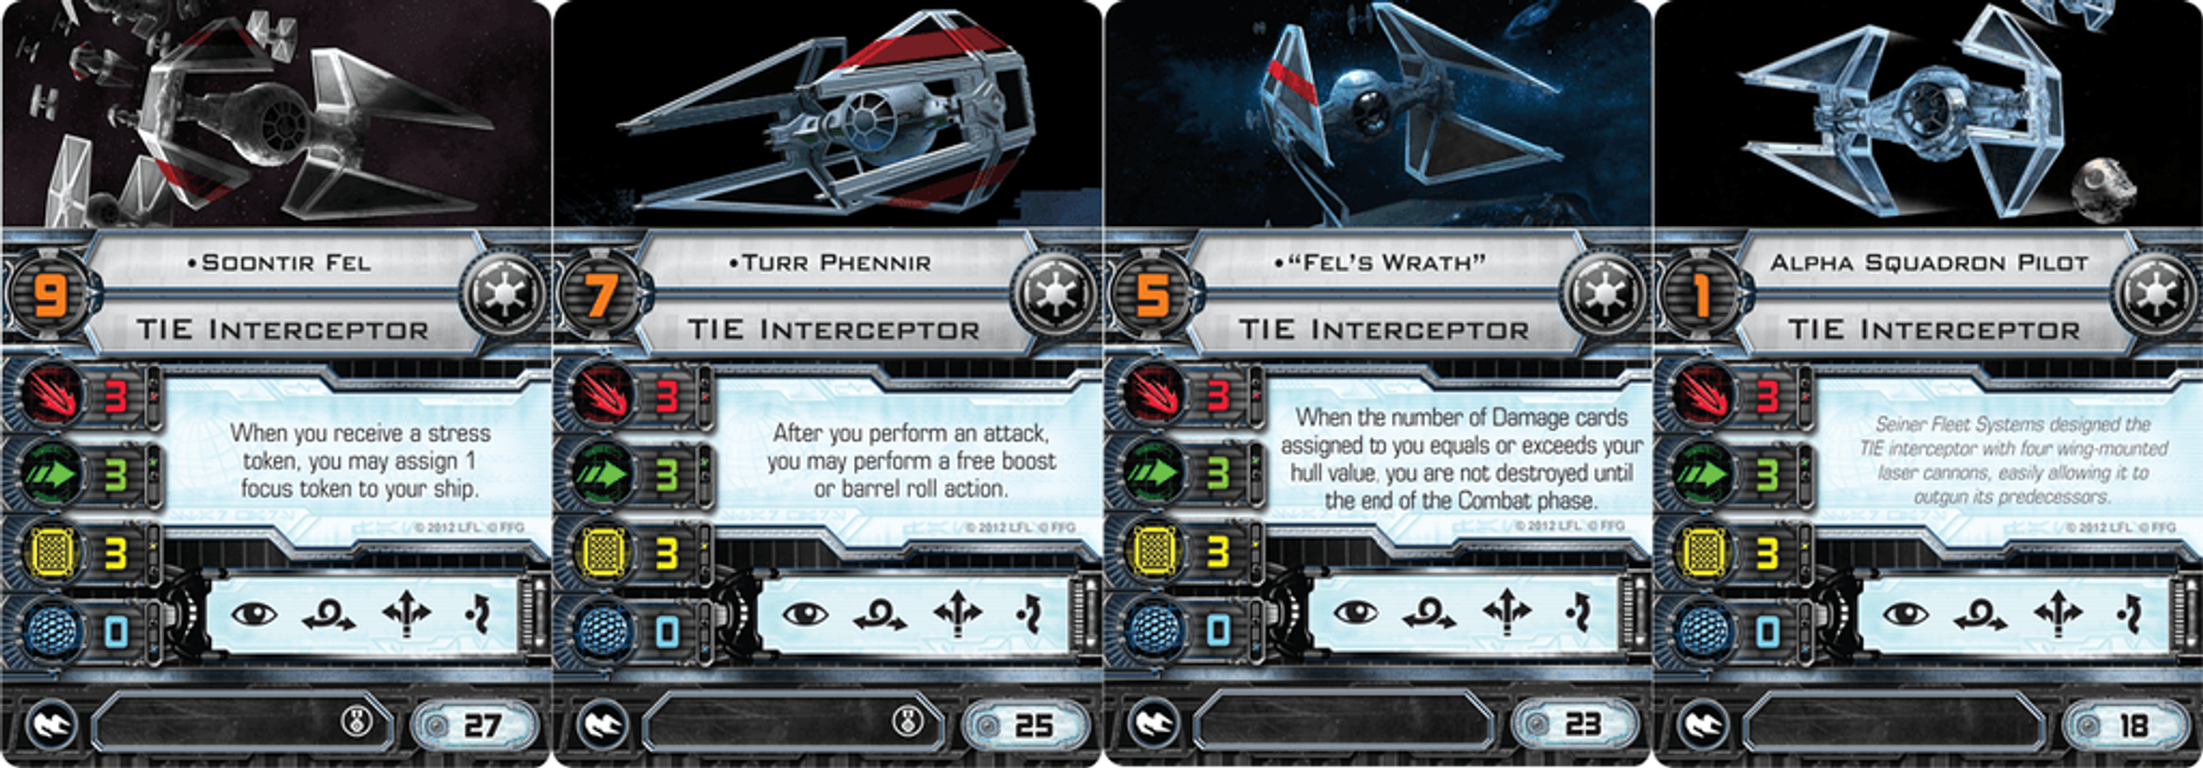 Star Wars X-Wing Miniaturen-Spiel: TIE Abfangjäger Erweiterung-Pack karten